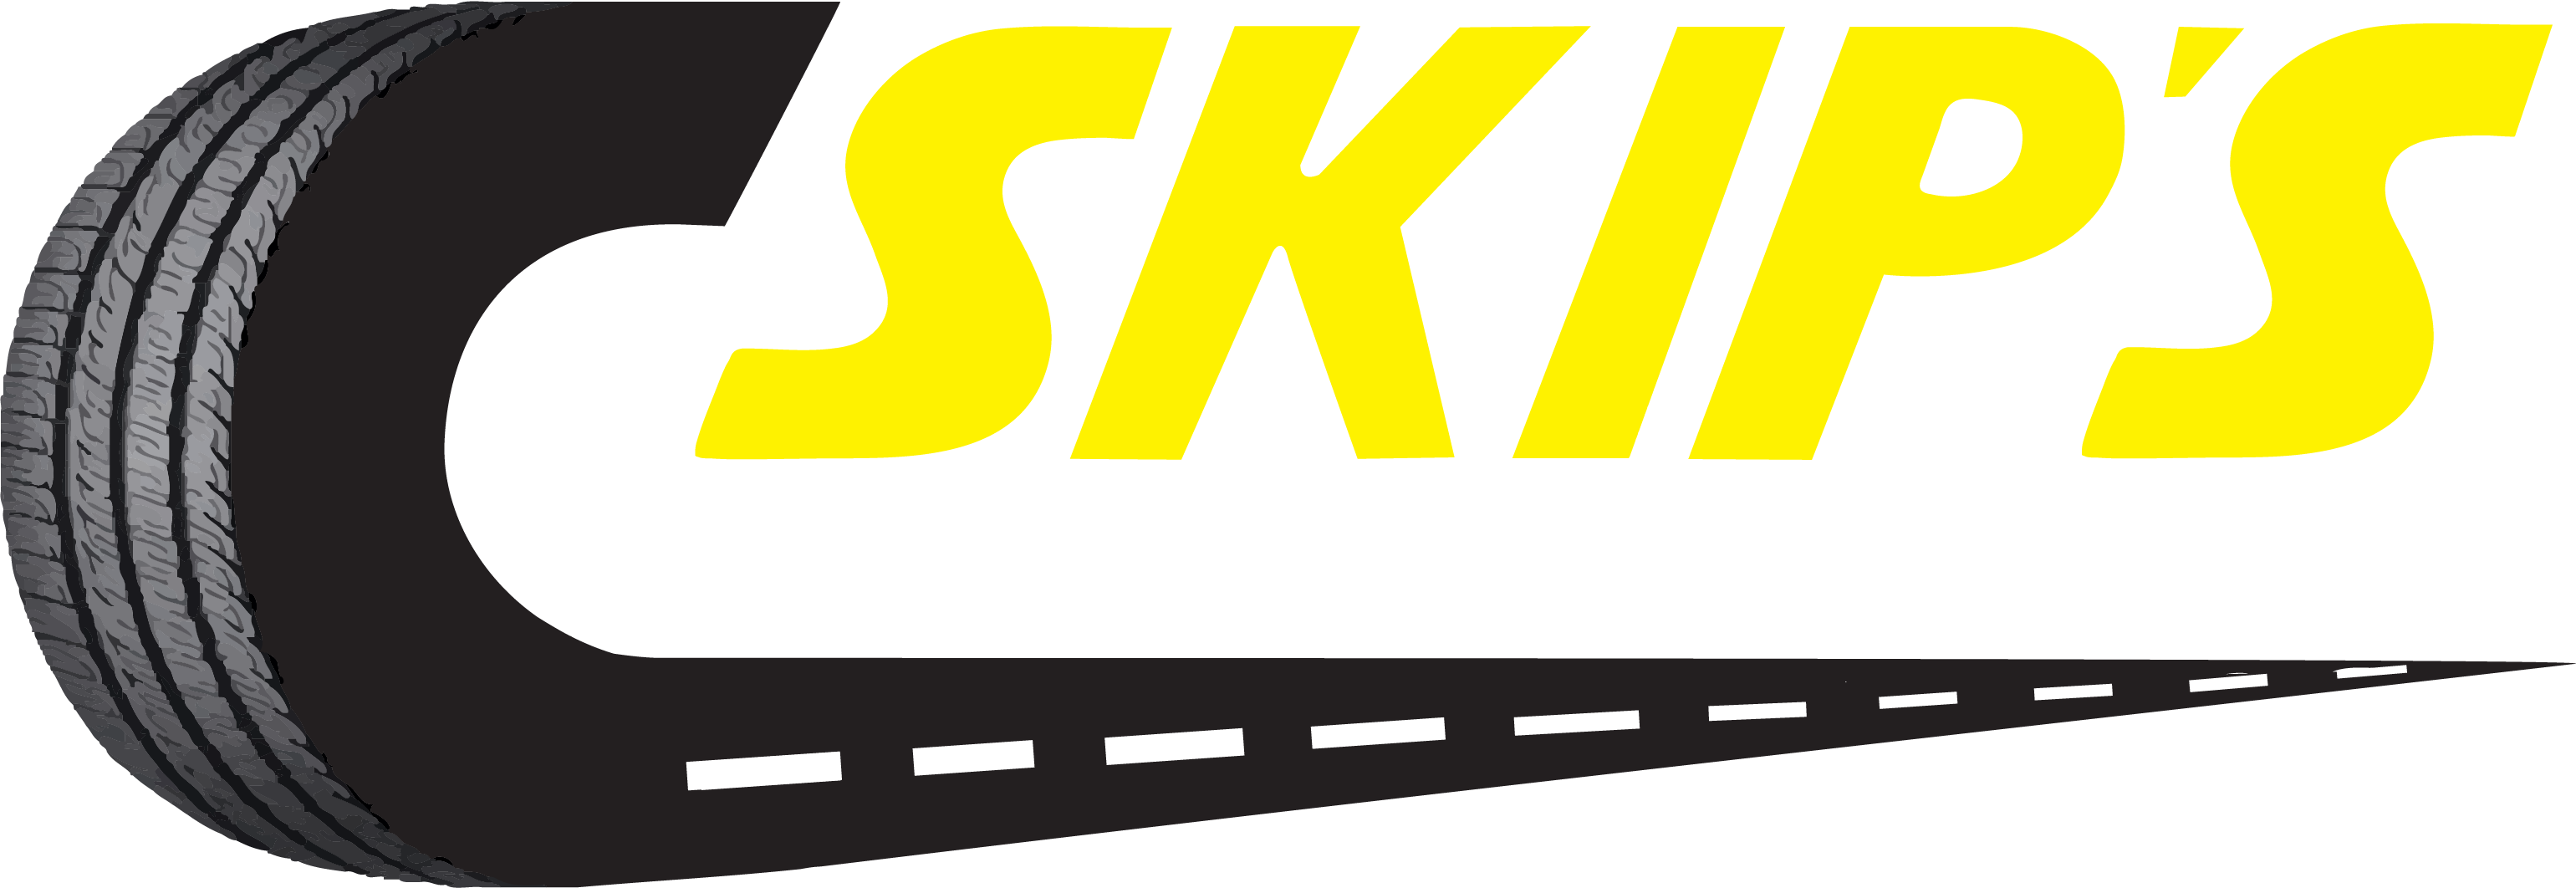 Skip's logo